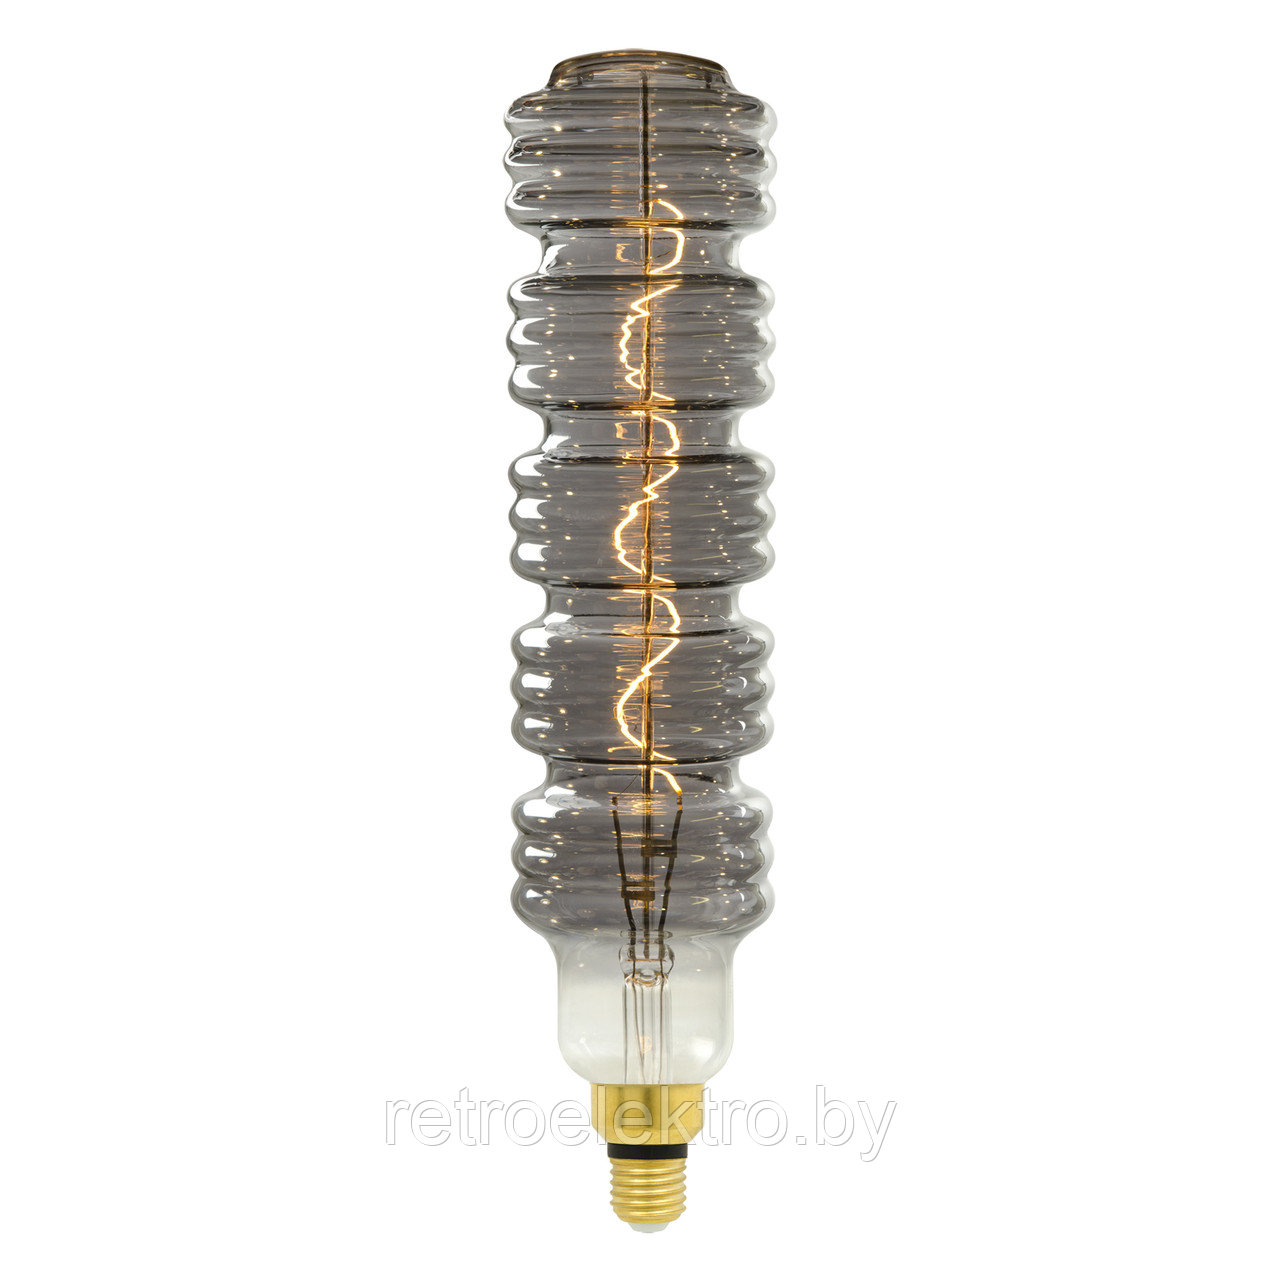 Ретро лампа светодиодная. Хромированно-дымчатая колба LED-SF41-5W-SOHO-E27-CW CHROME-SMOKE GLS77CR